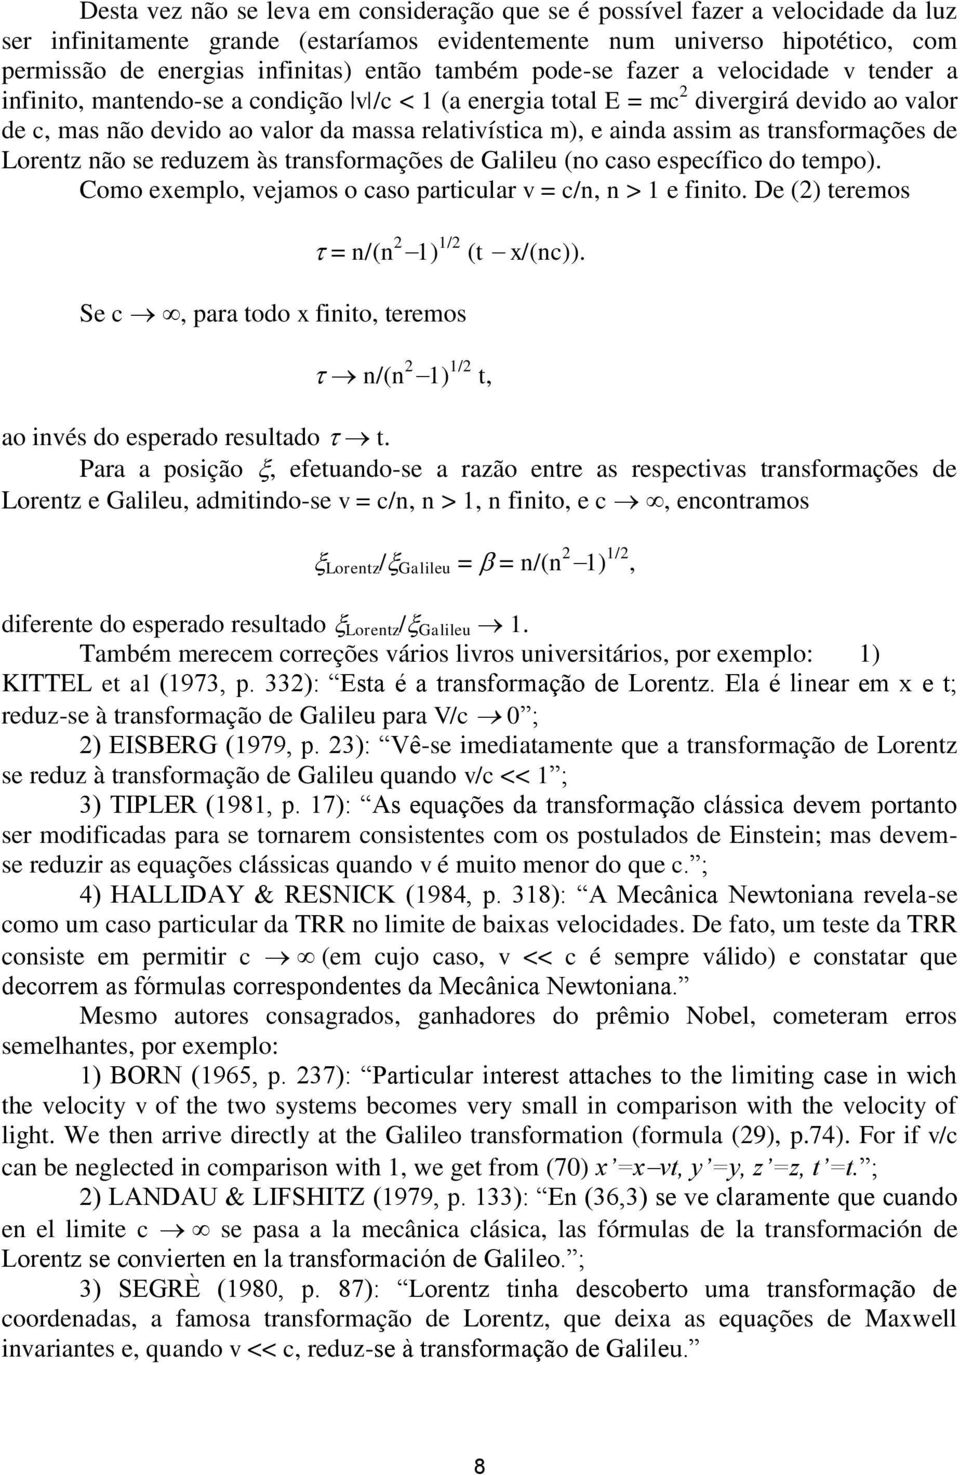 m), e ainda assim as transformações de Lorentz não se reduzem às transformações de Galileu (no caso específico do tempo). Como exemplo, vejamos o caso particular v = c/n, n > 1 e finito.